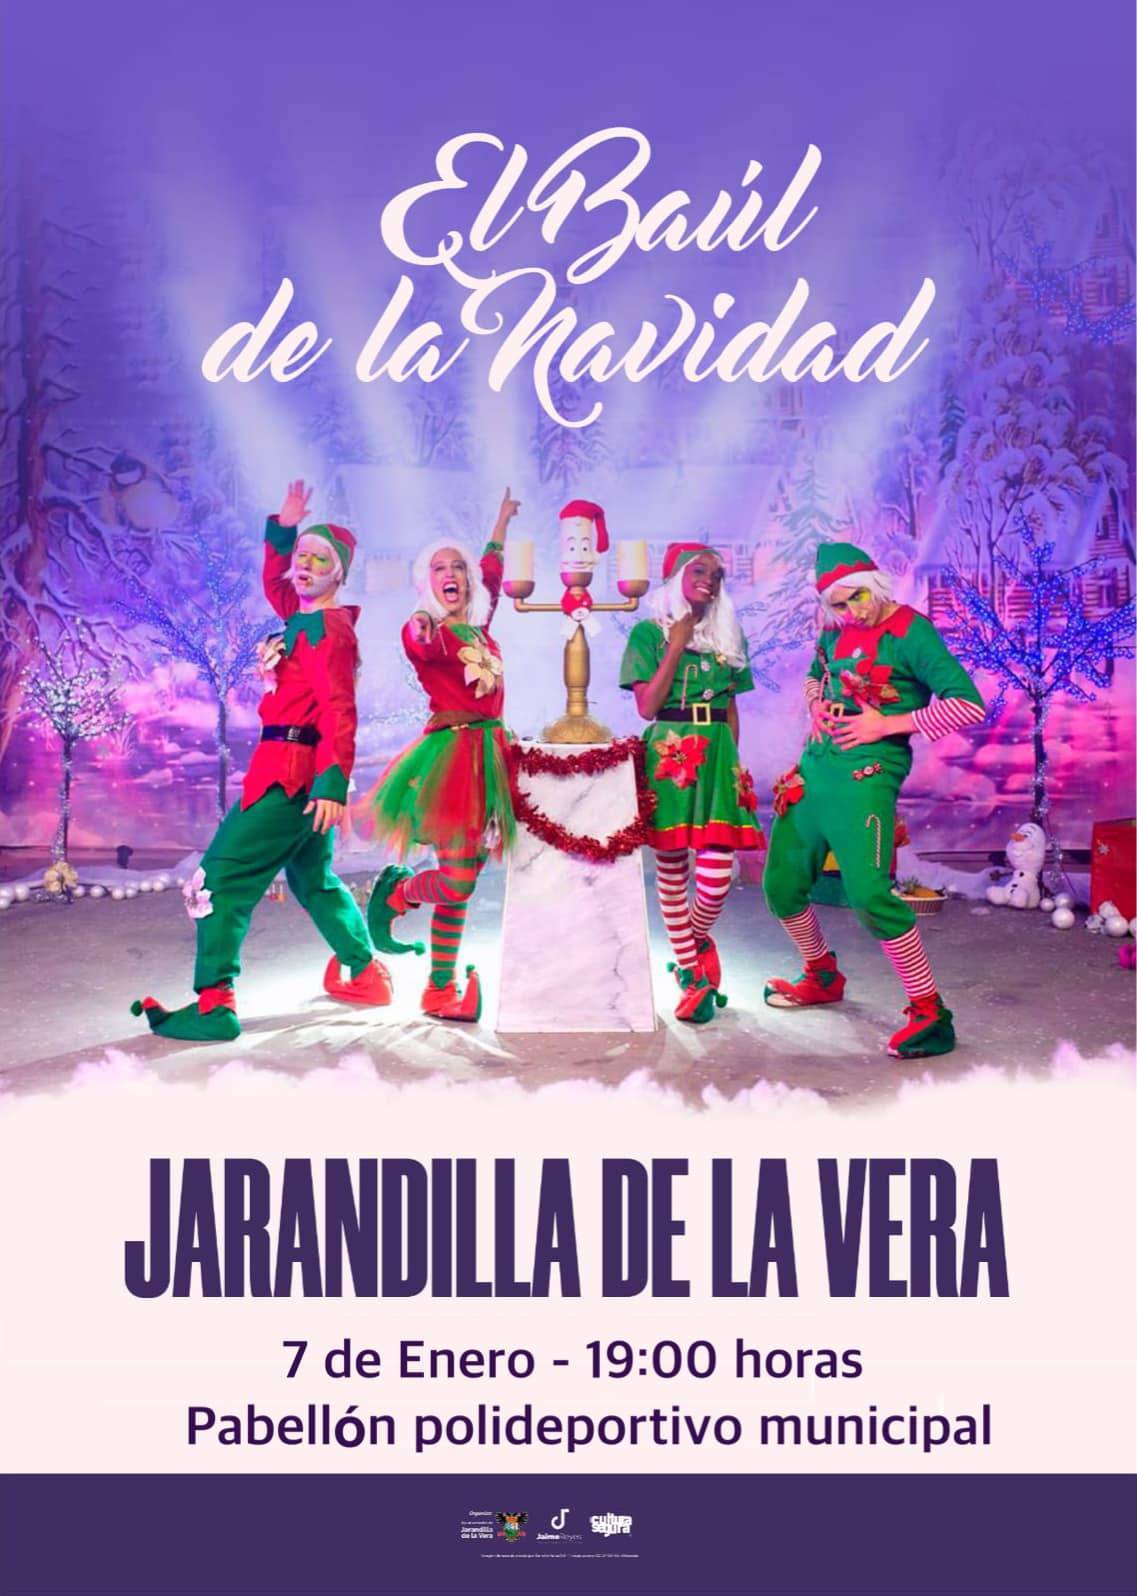 'El baúl de la Navidad' (2022) - Jarandilla de la Vera (Cáceres)